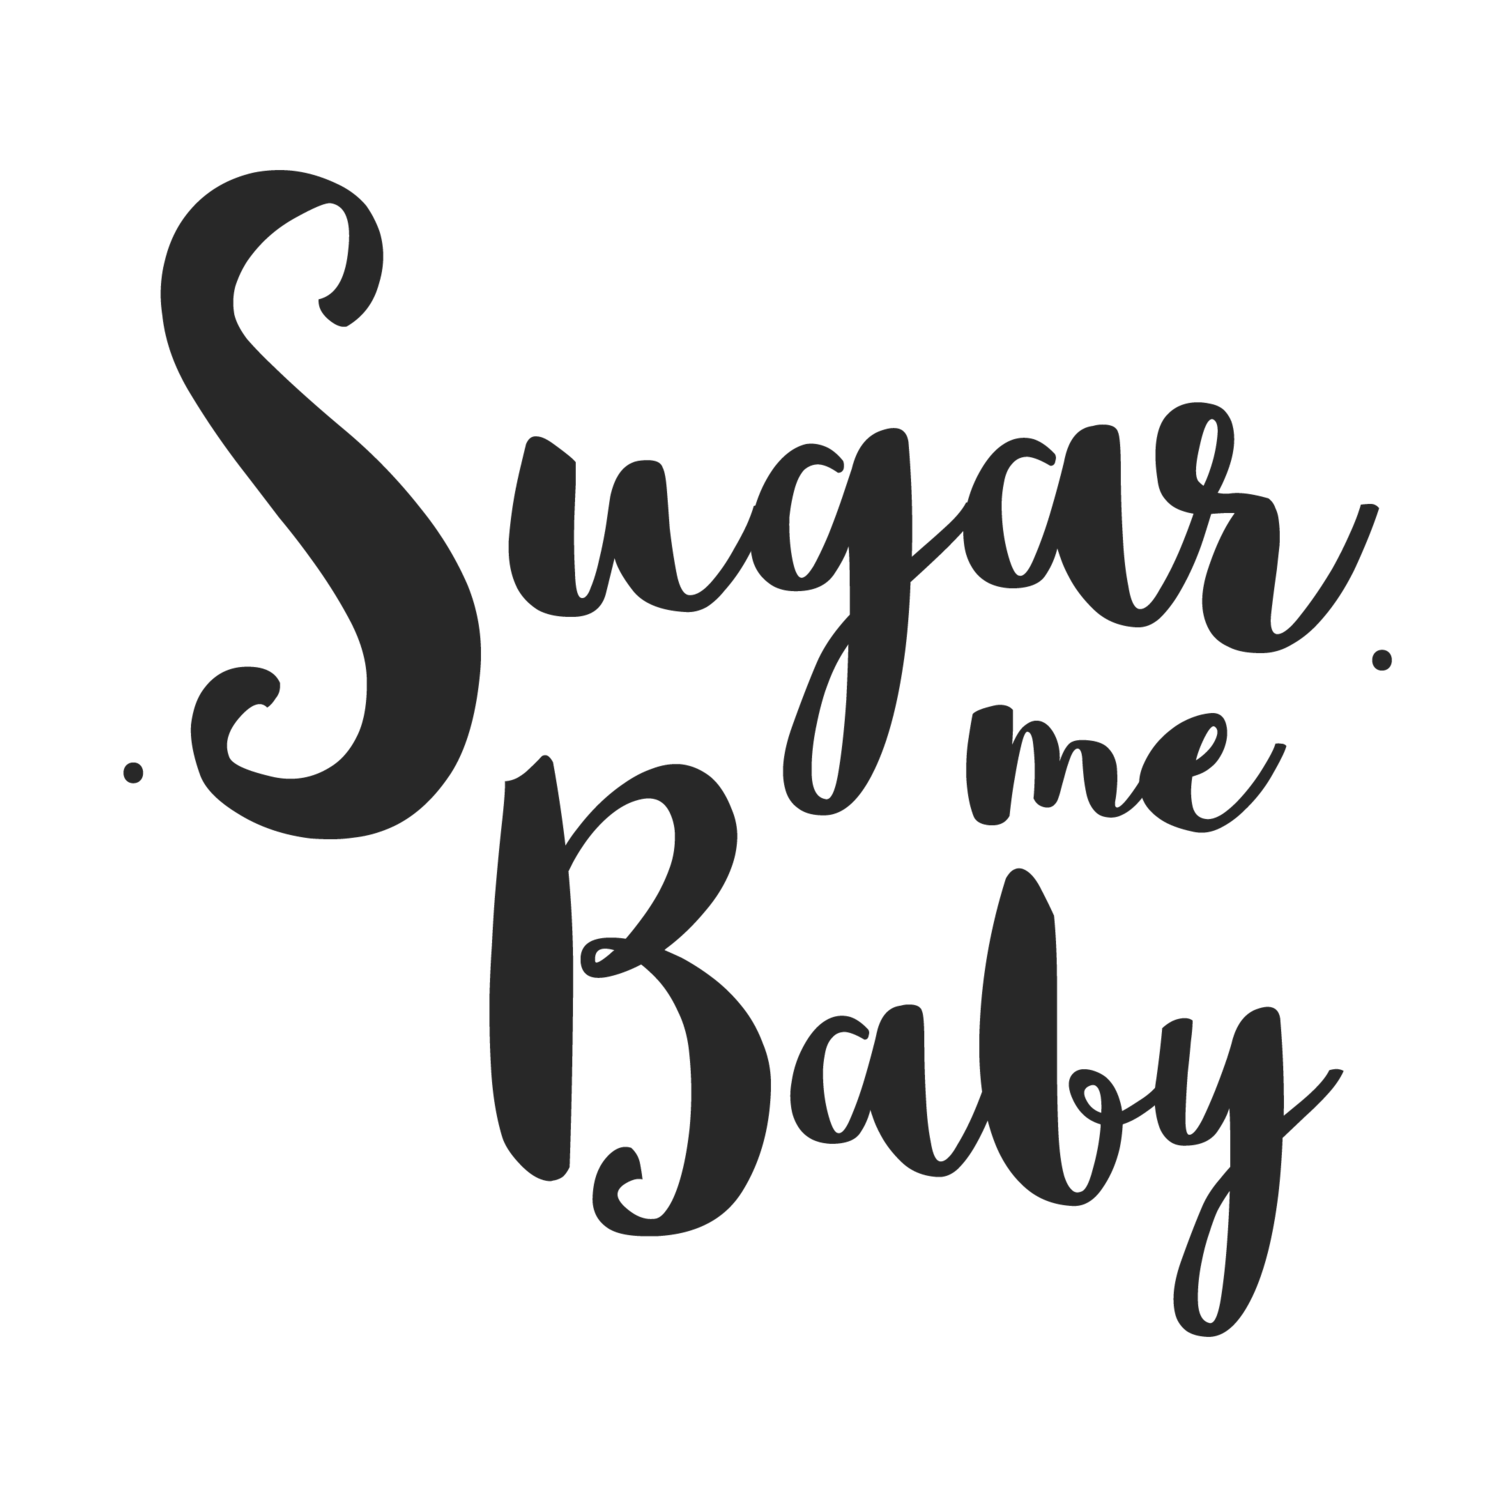 Sugar Me Baby